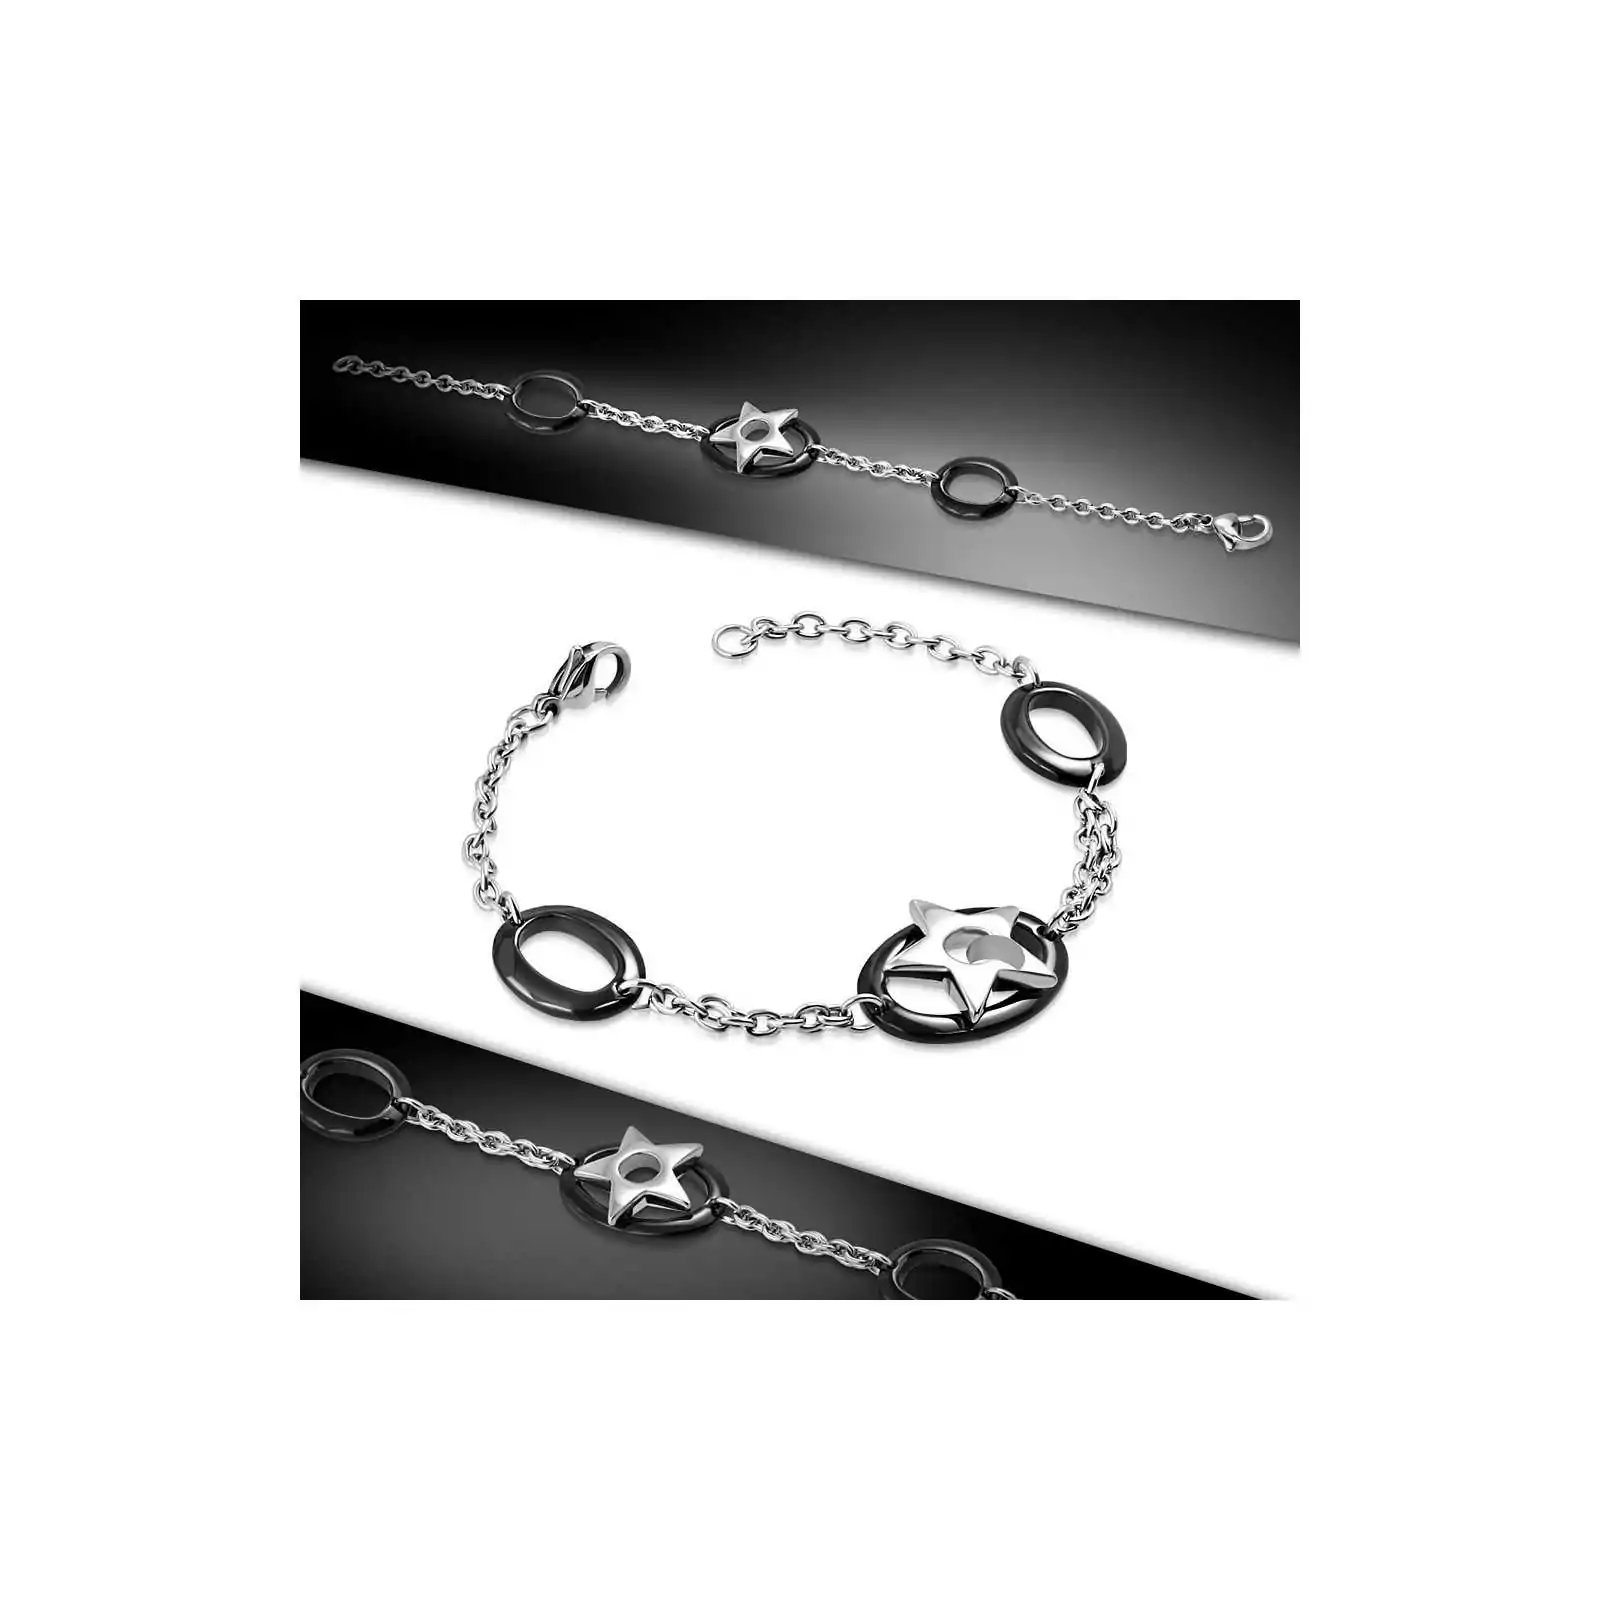 Bracelet Femme en acier inoxydable Chaines Entrelacées